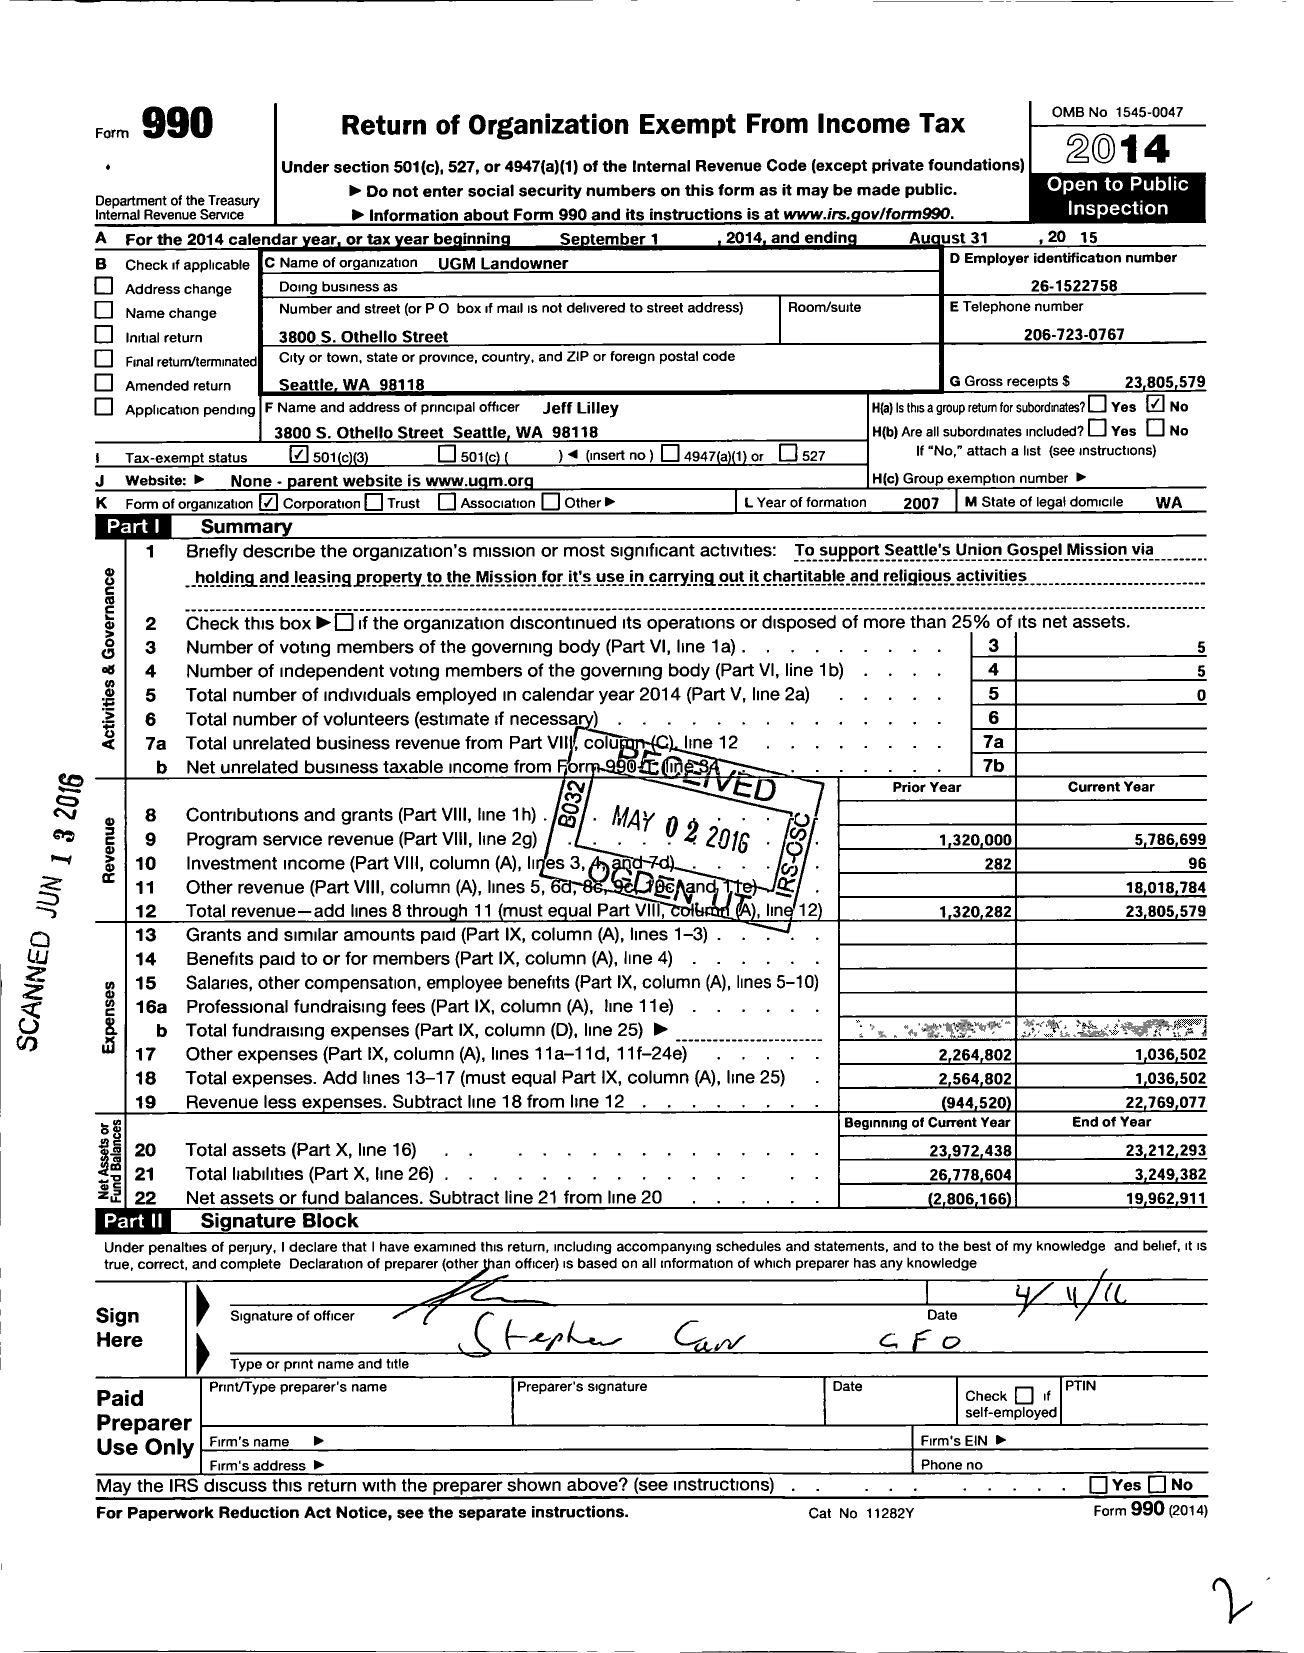 Image of first page of 2014 Form 990 for Ugm Landowner